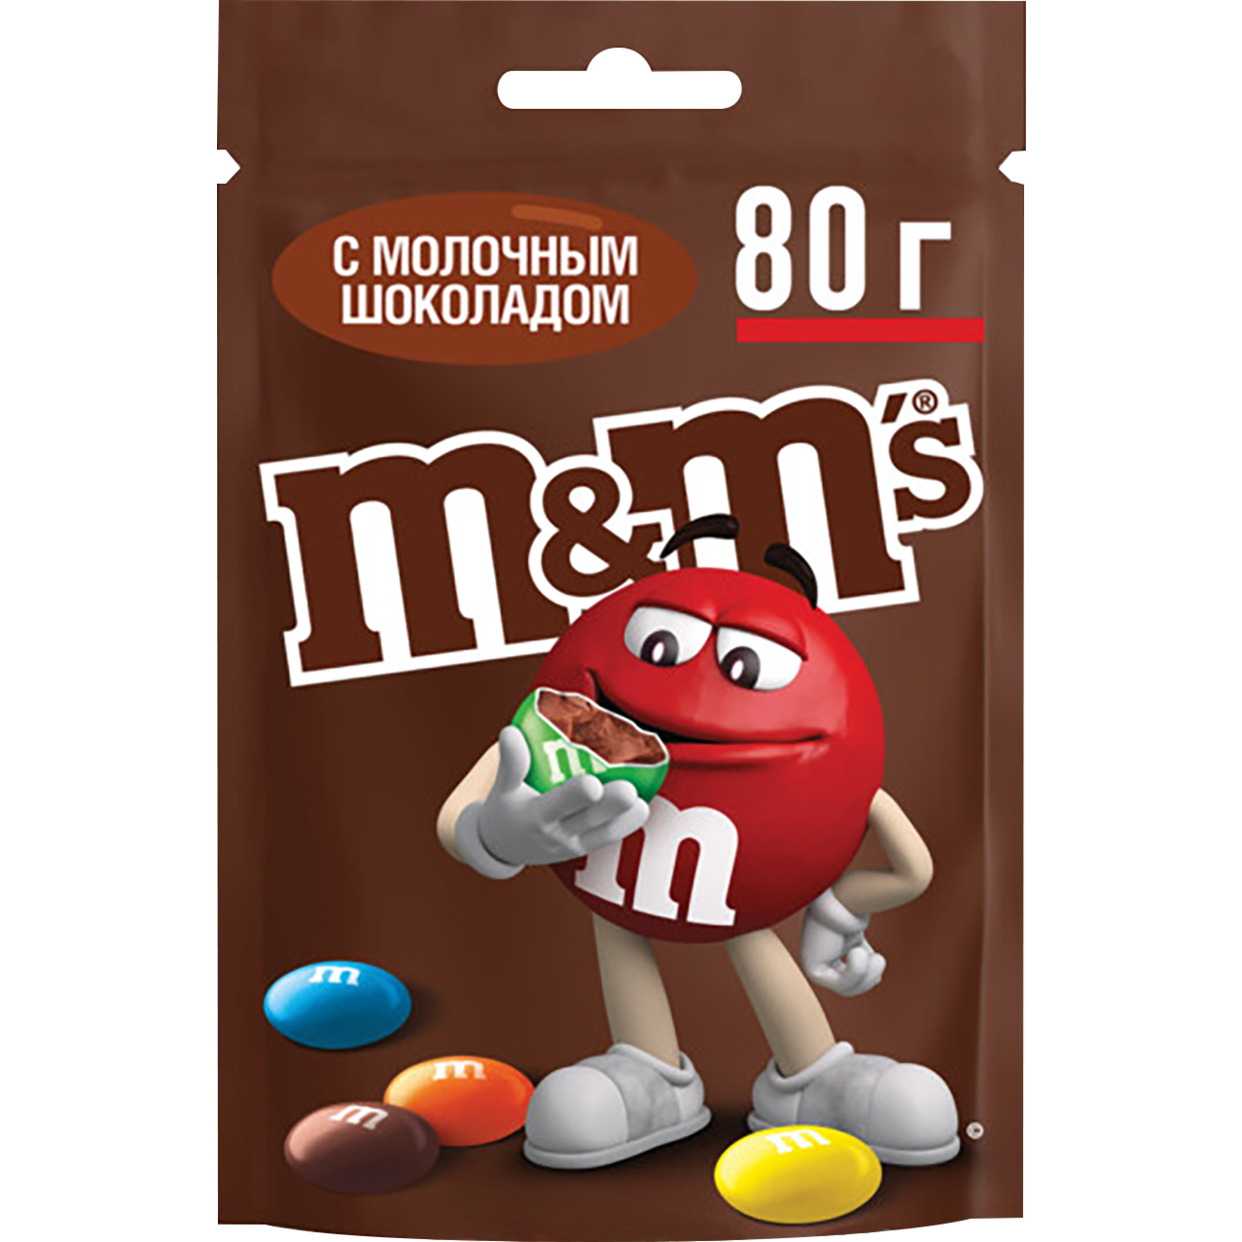 Драже M&M’s с молочным шоколадом, покрытое хрустящей разноцветной глазурью, 80г по акции в Пятерочке